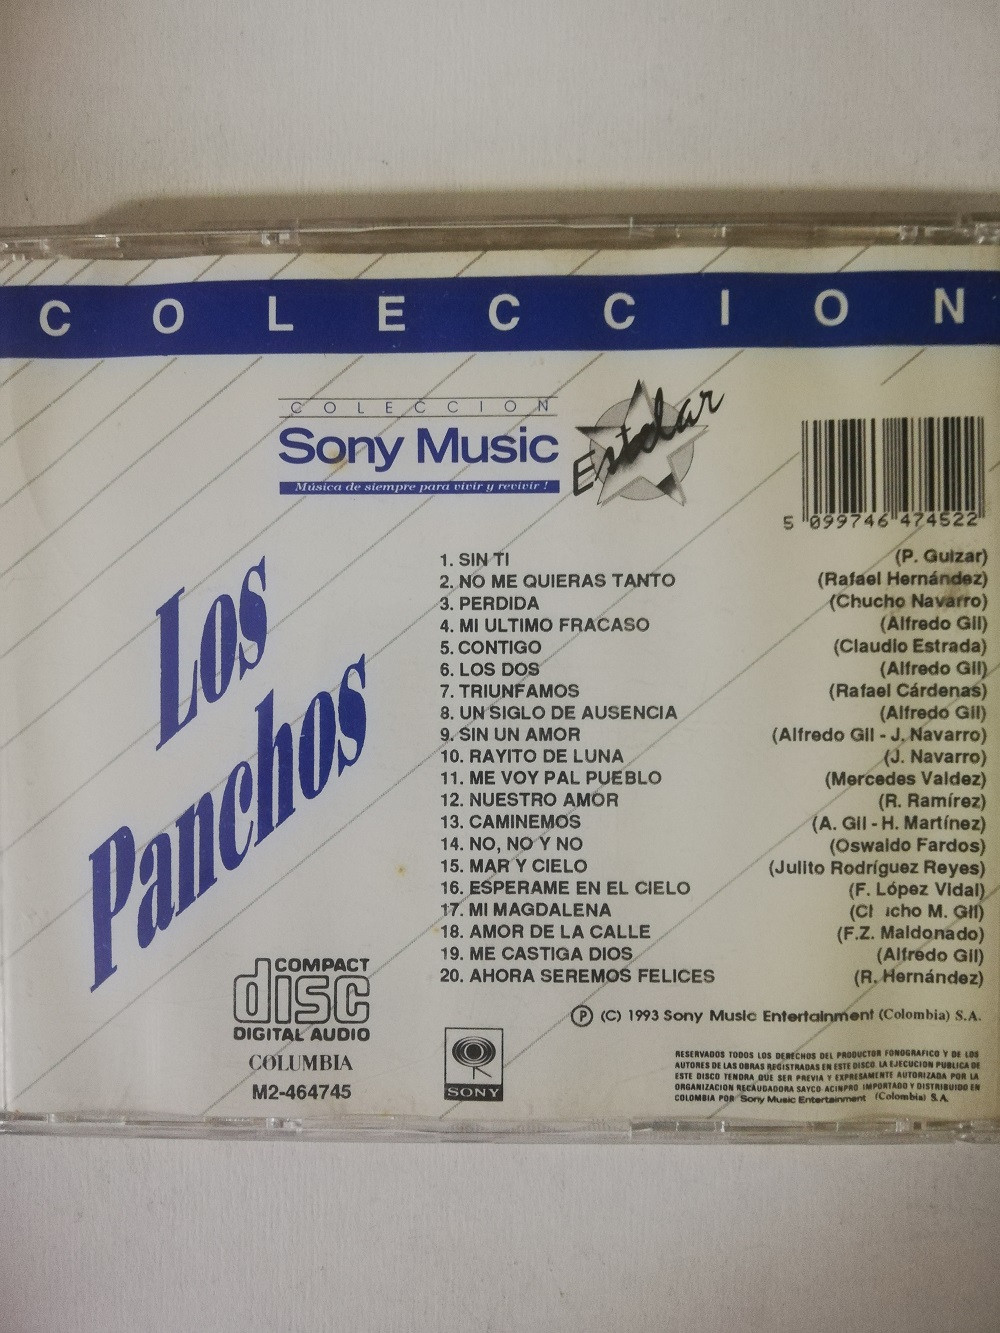 Imagen CD LOS PANCHOS - COLECCIÓN SONY MUSIC ESTELAR 2